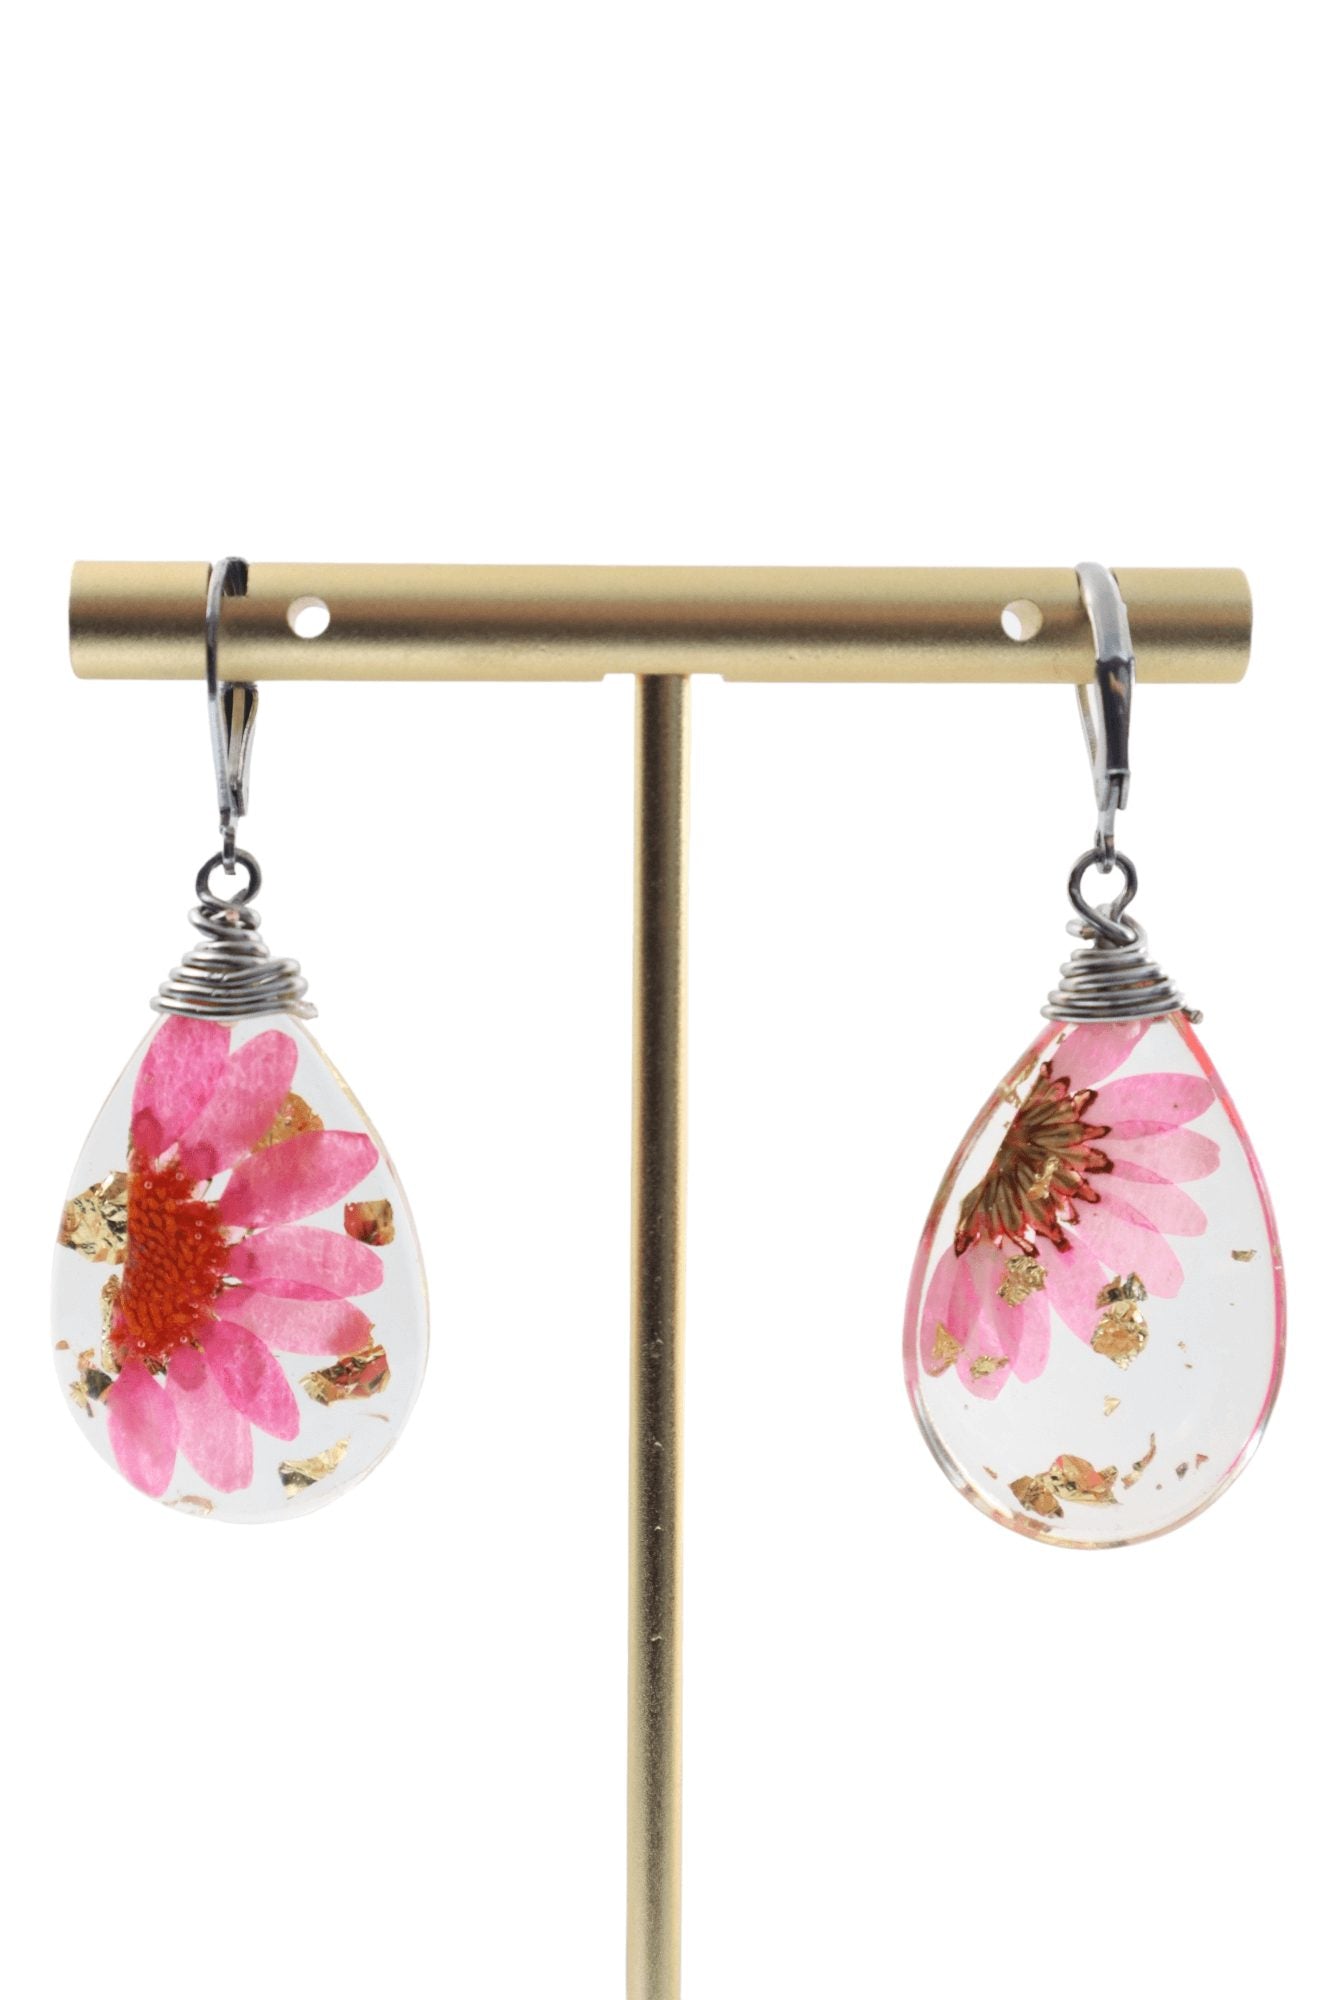 Flower-pressed-jewelry---garden-jewelry---flower-jewelry---Kaleidoscopes-And-Polka-Dots